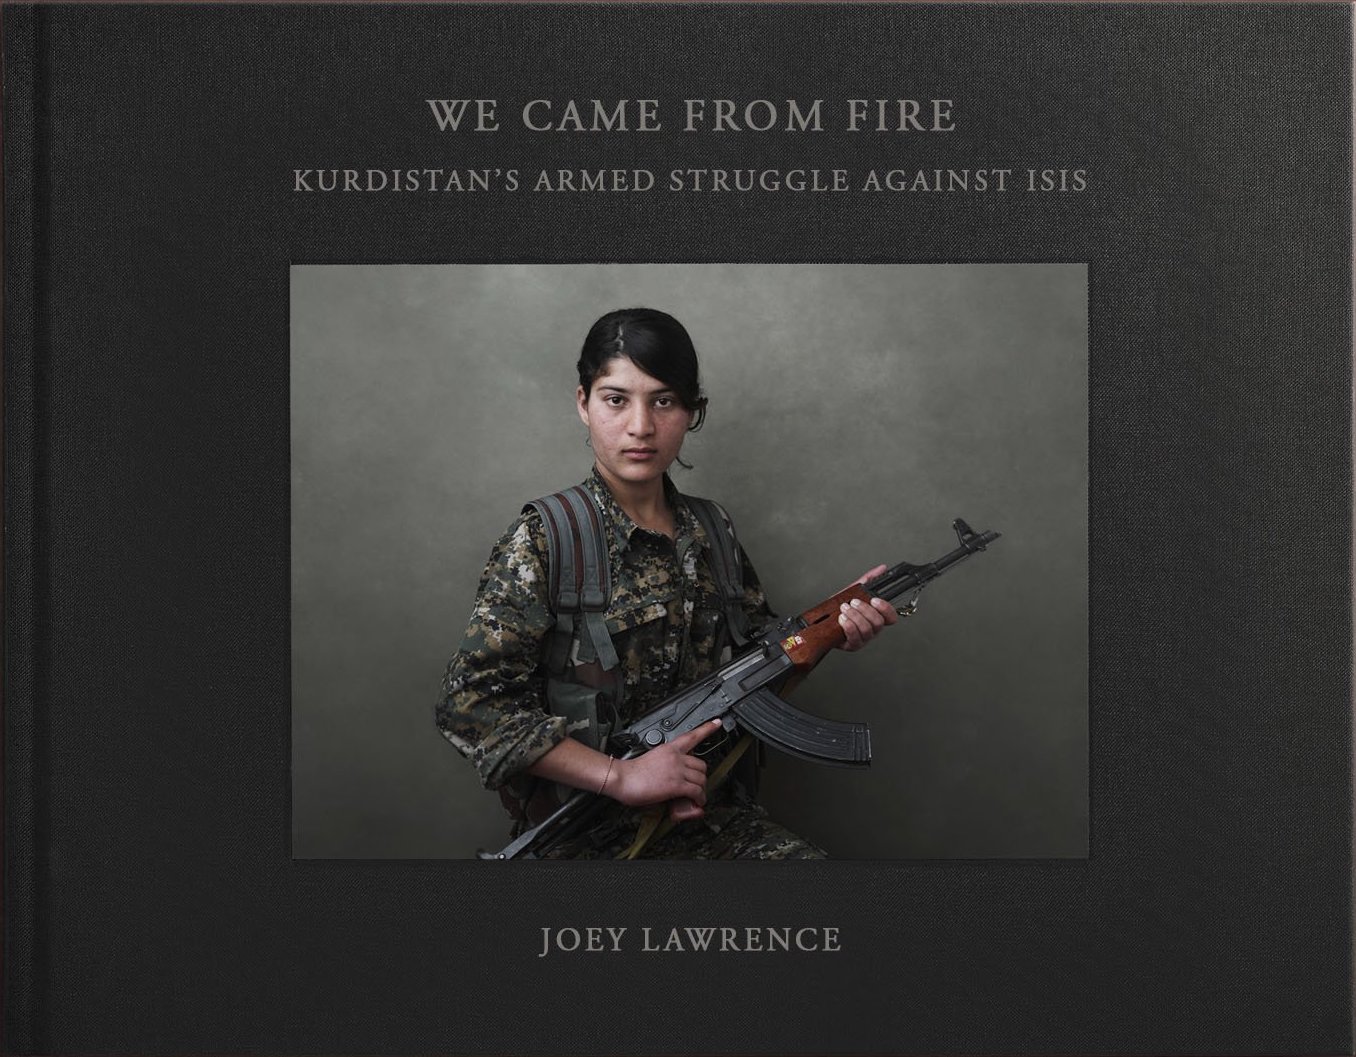 الغلاف الإنكليزي لكتاب "جئنا من النار - كفاح كردستان المسلح ضد داعش". Cover of Joey Lawrence's "We came from fire" (published by powerHouse)